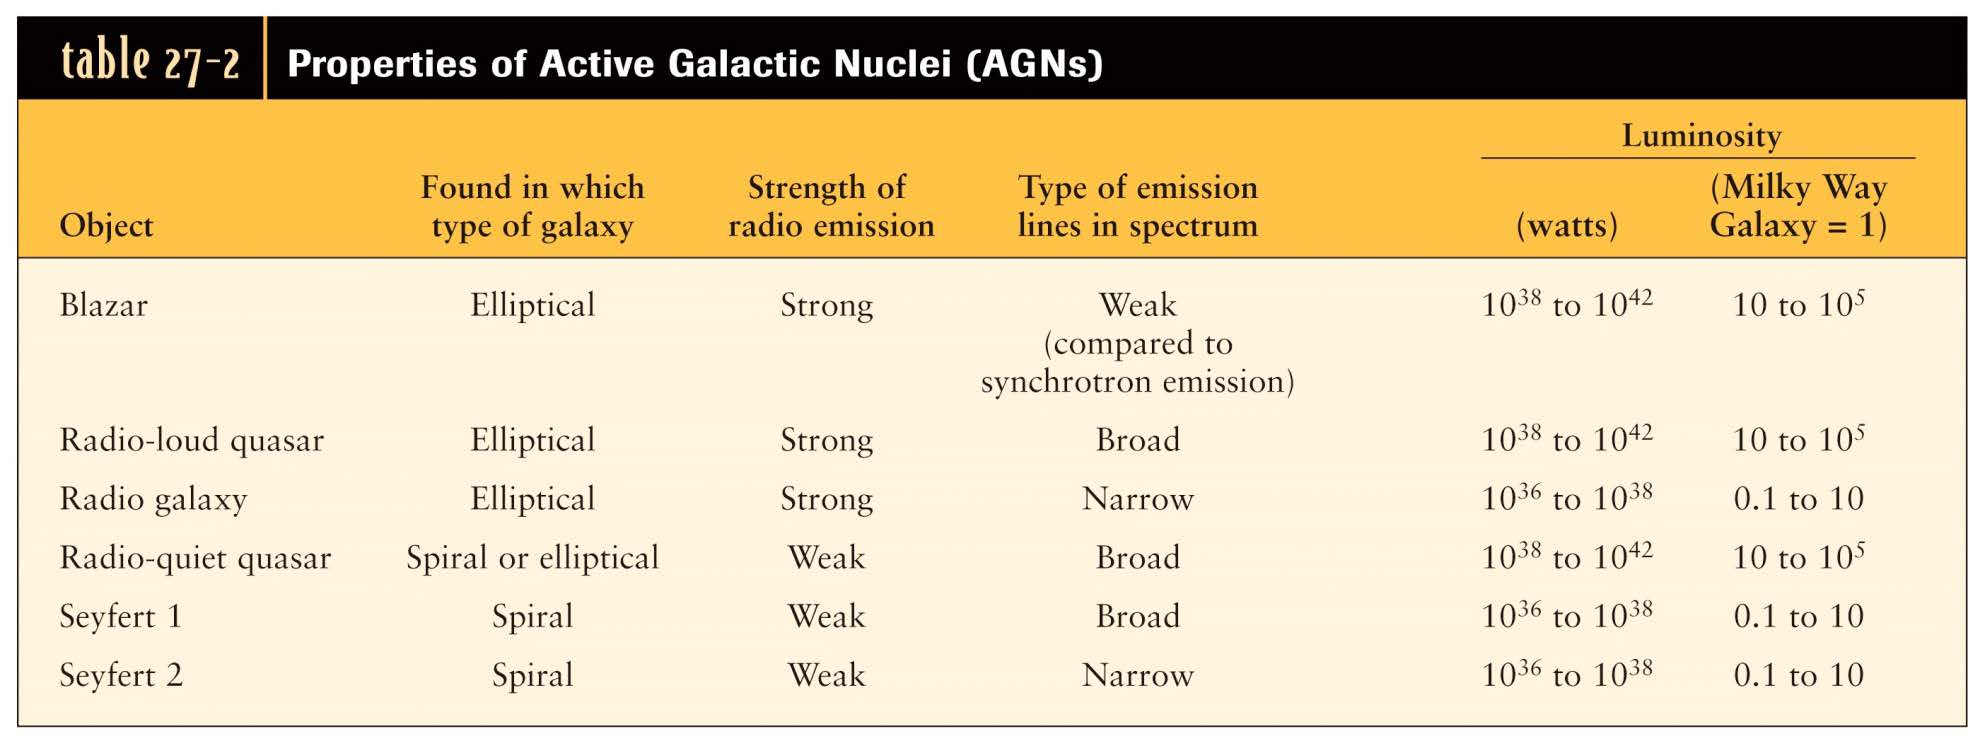 Kvasarer, blasarer, Seyfertgalaxer och radiogalaxer är alla exempel på aktiva galaxer som har en aktiv galaktisk kärna: AGN = Active Galactic Nuclei.